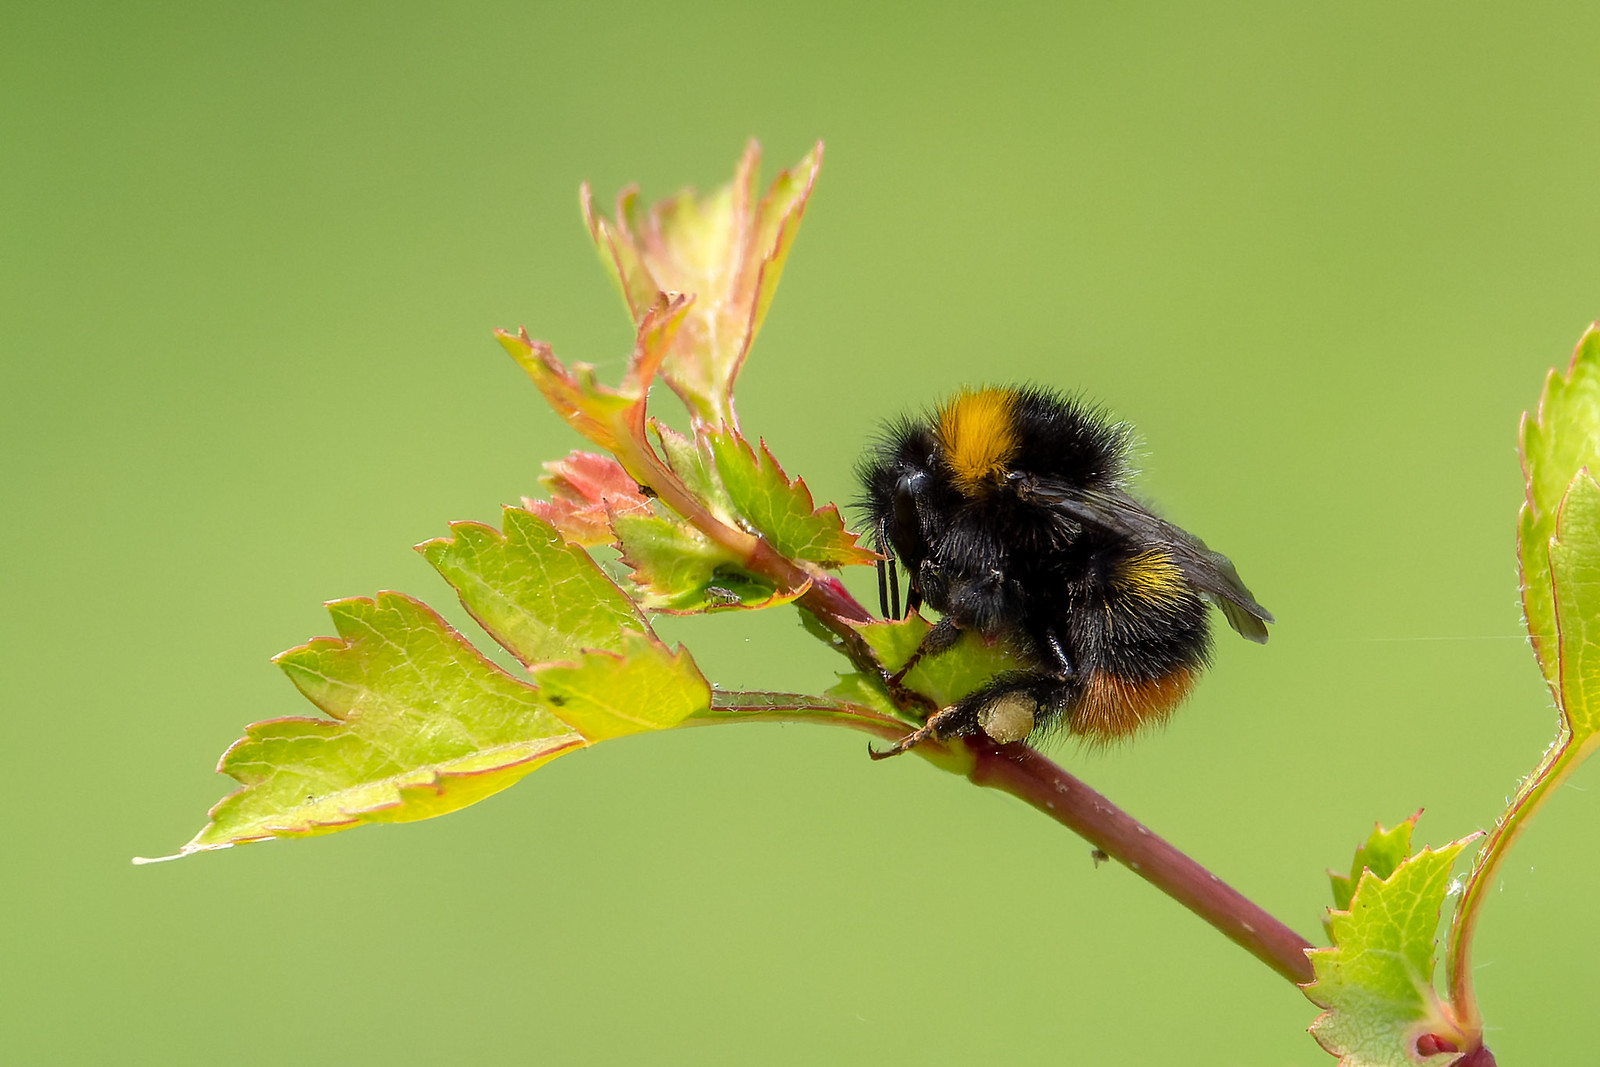 Early Bumblebee - Bombus pratorum